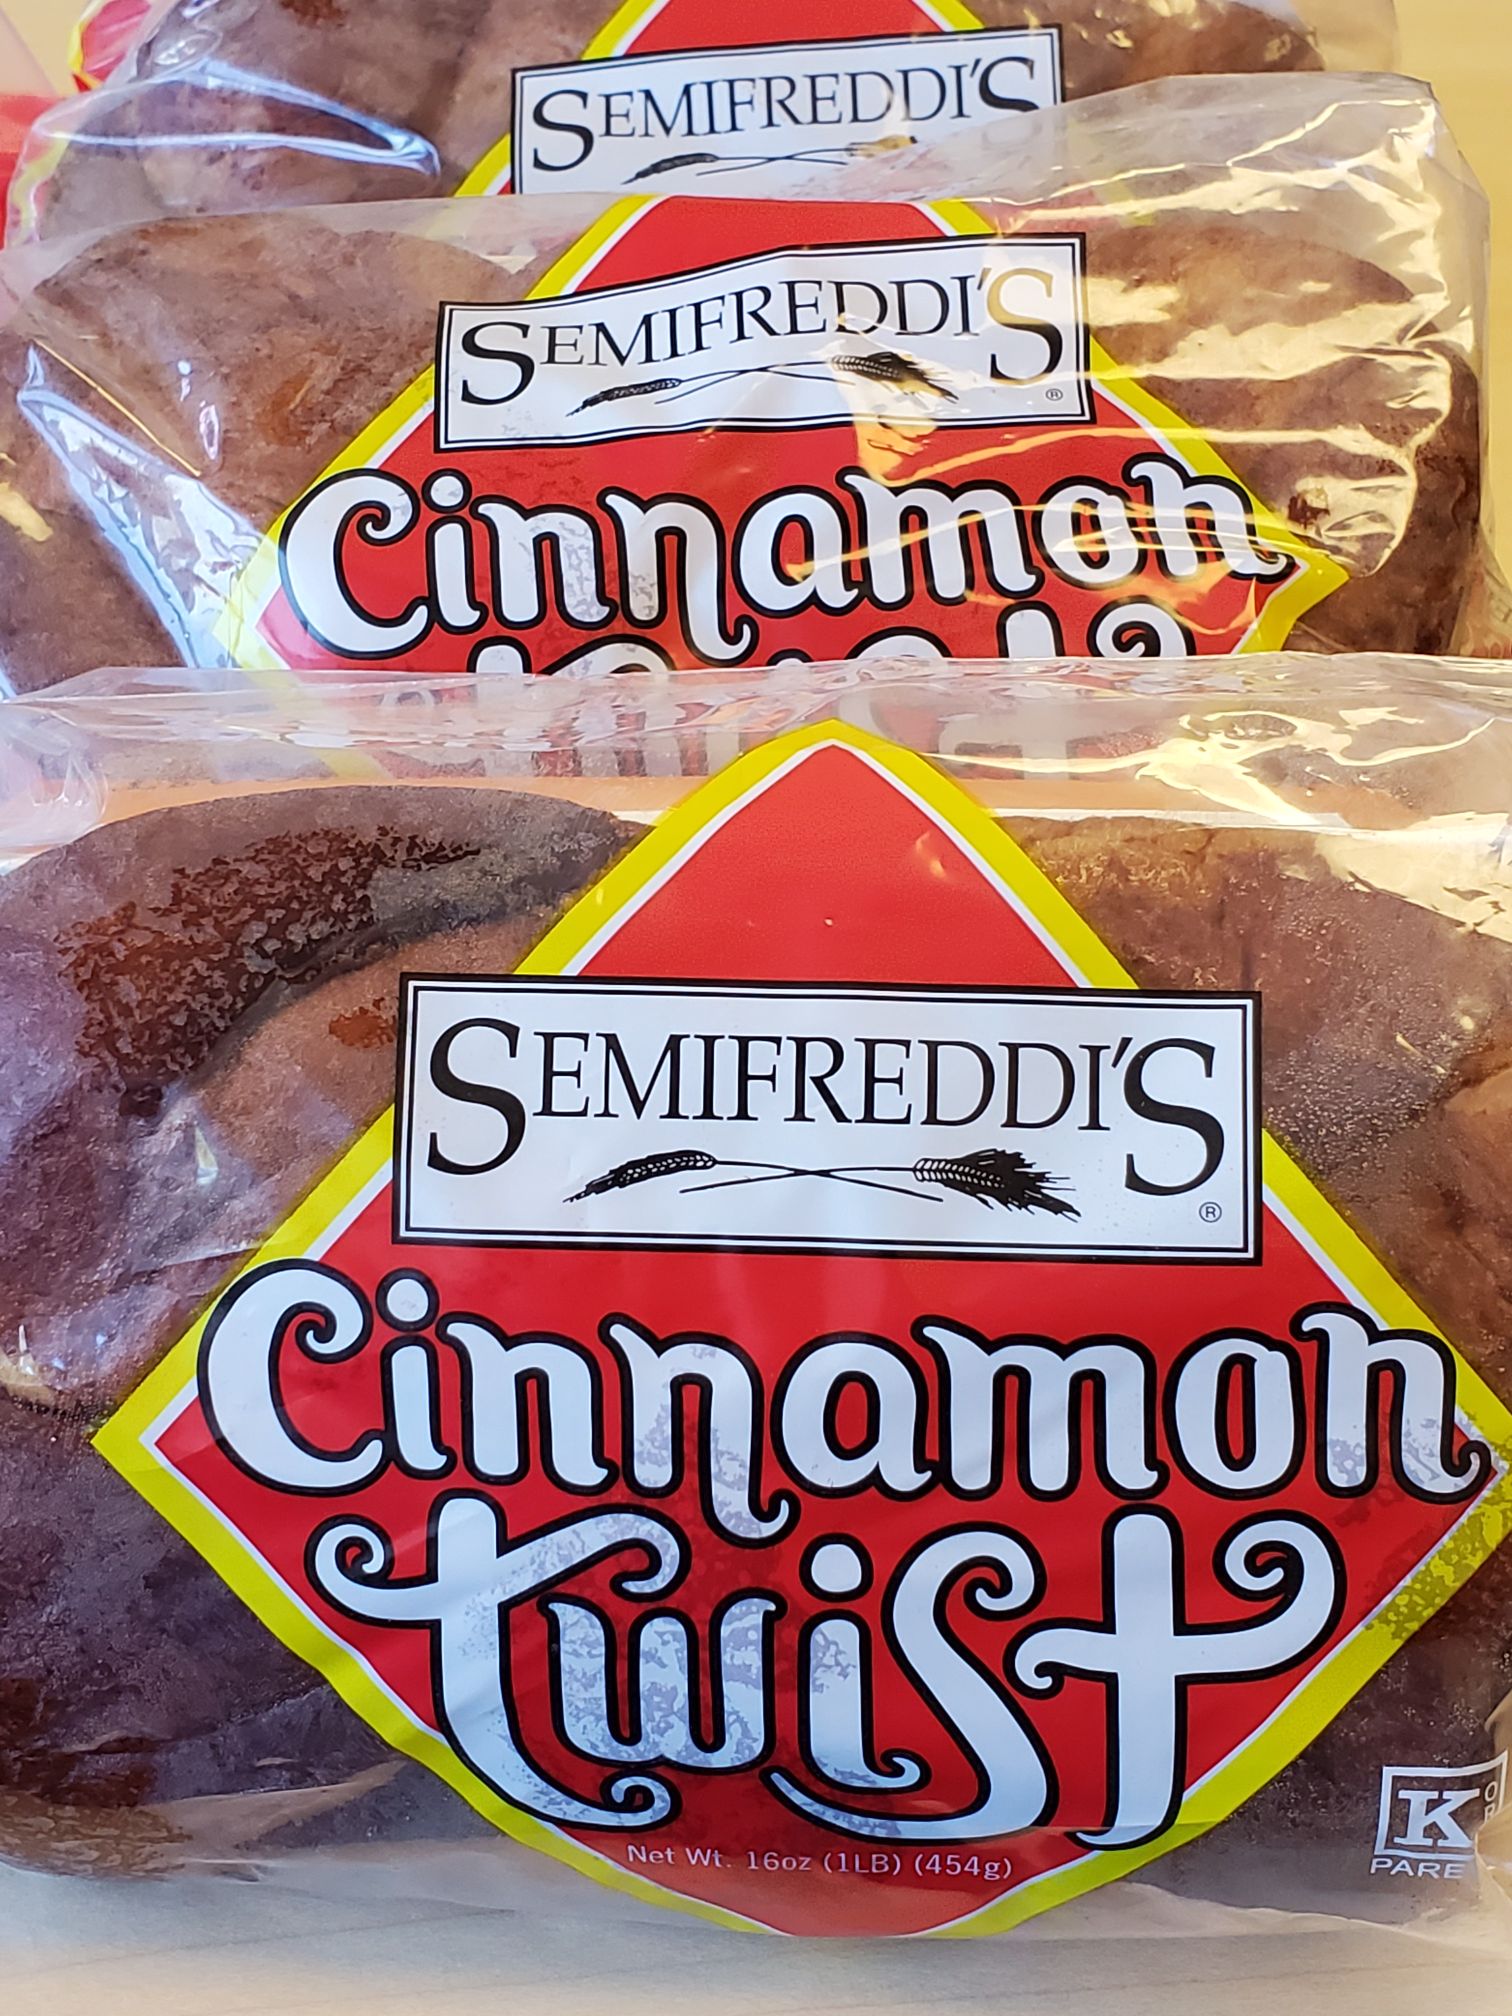 Photo of Semifreddis Cinnamon Twist Bread in packaging